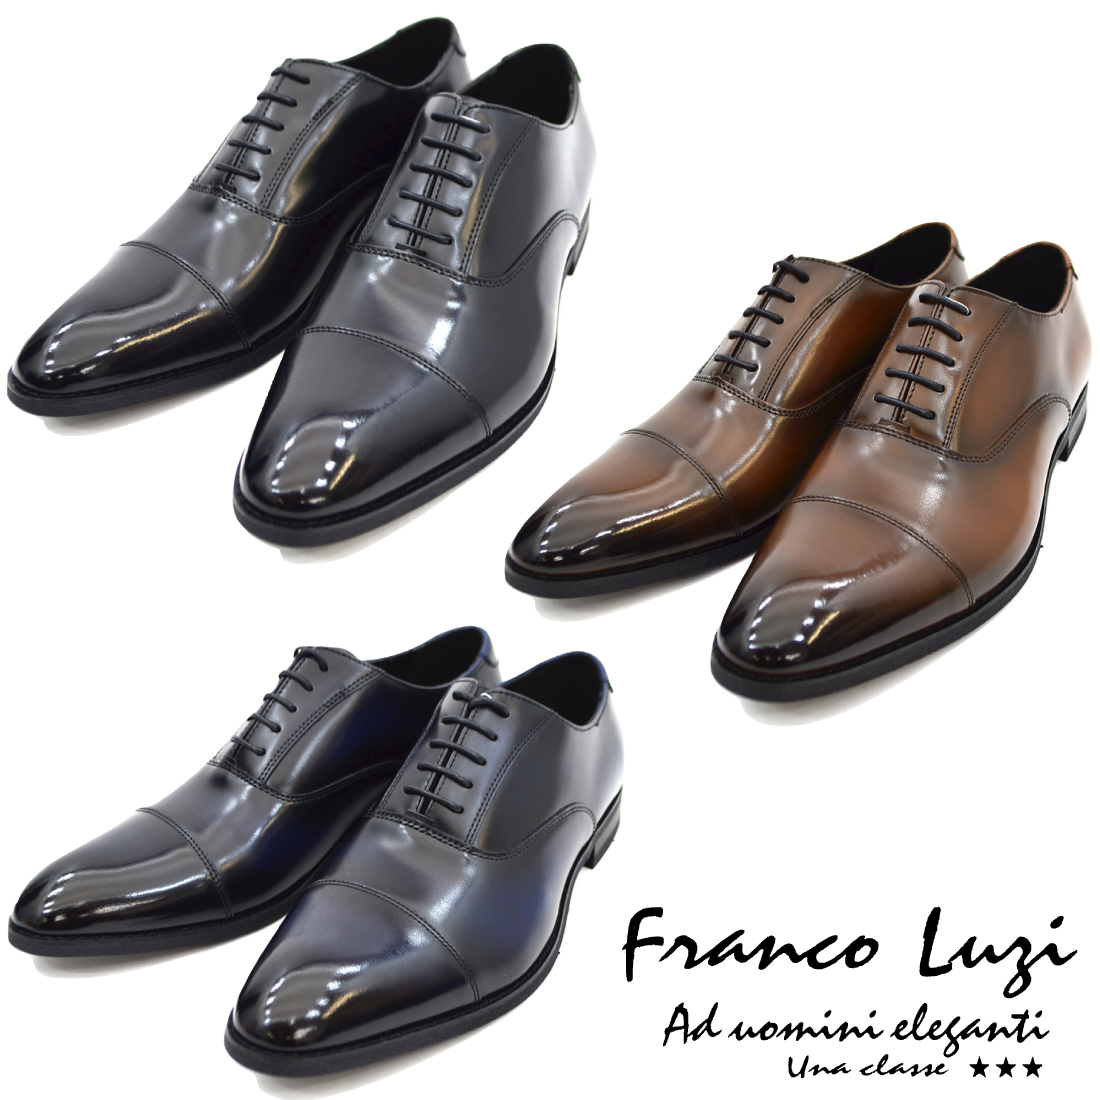 ▲FRANCO LUZI フランコ ルッチ 2001 ビジネスシューズ ストレートチップ 紳士靴 革靴 メンズ ブラック 黒 25.0cm (0910010550-bk-s250)